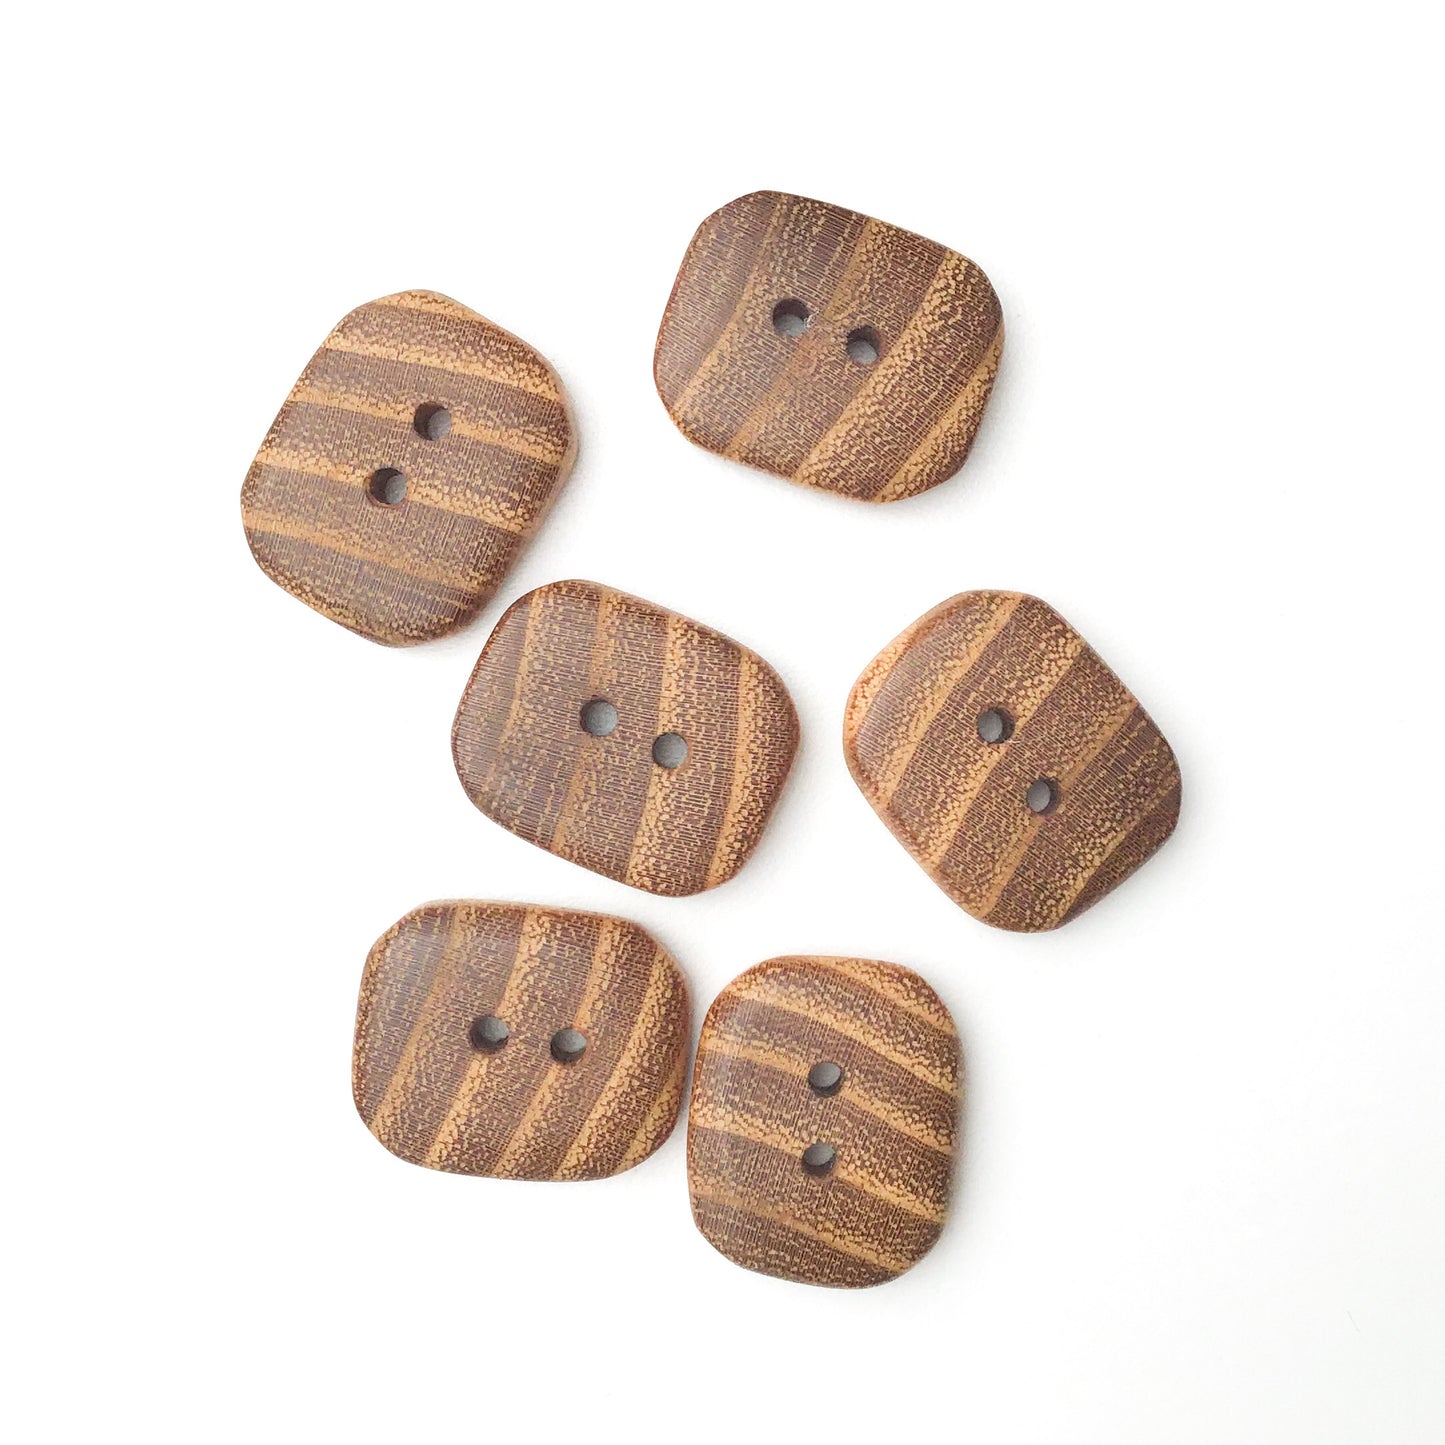 Black Locust Wood Buttons - Rectangular Wood Buttons - 7/8" X 1" - 6 Pack